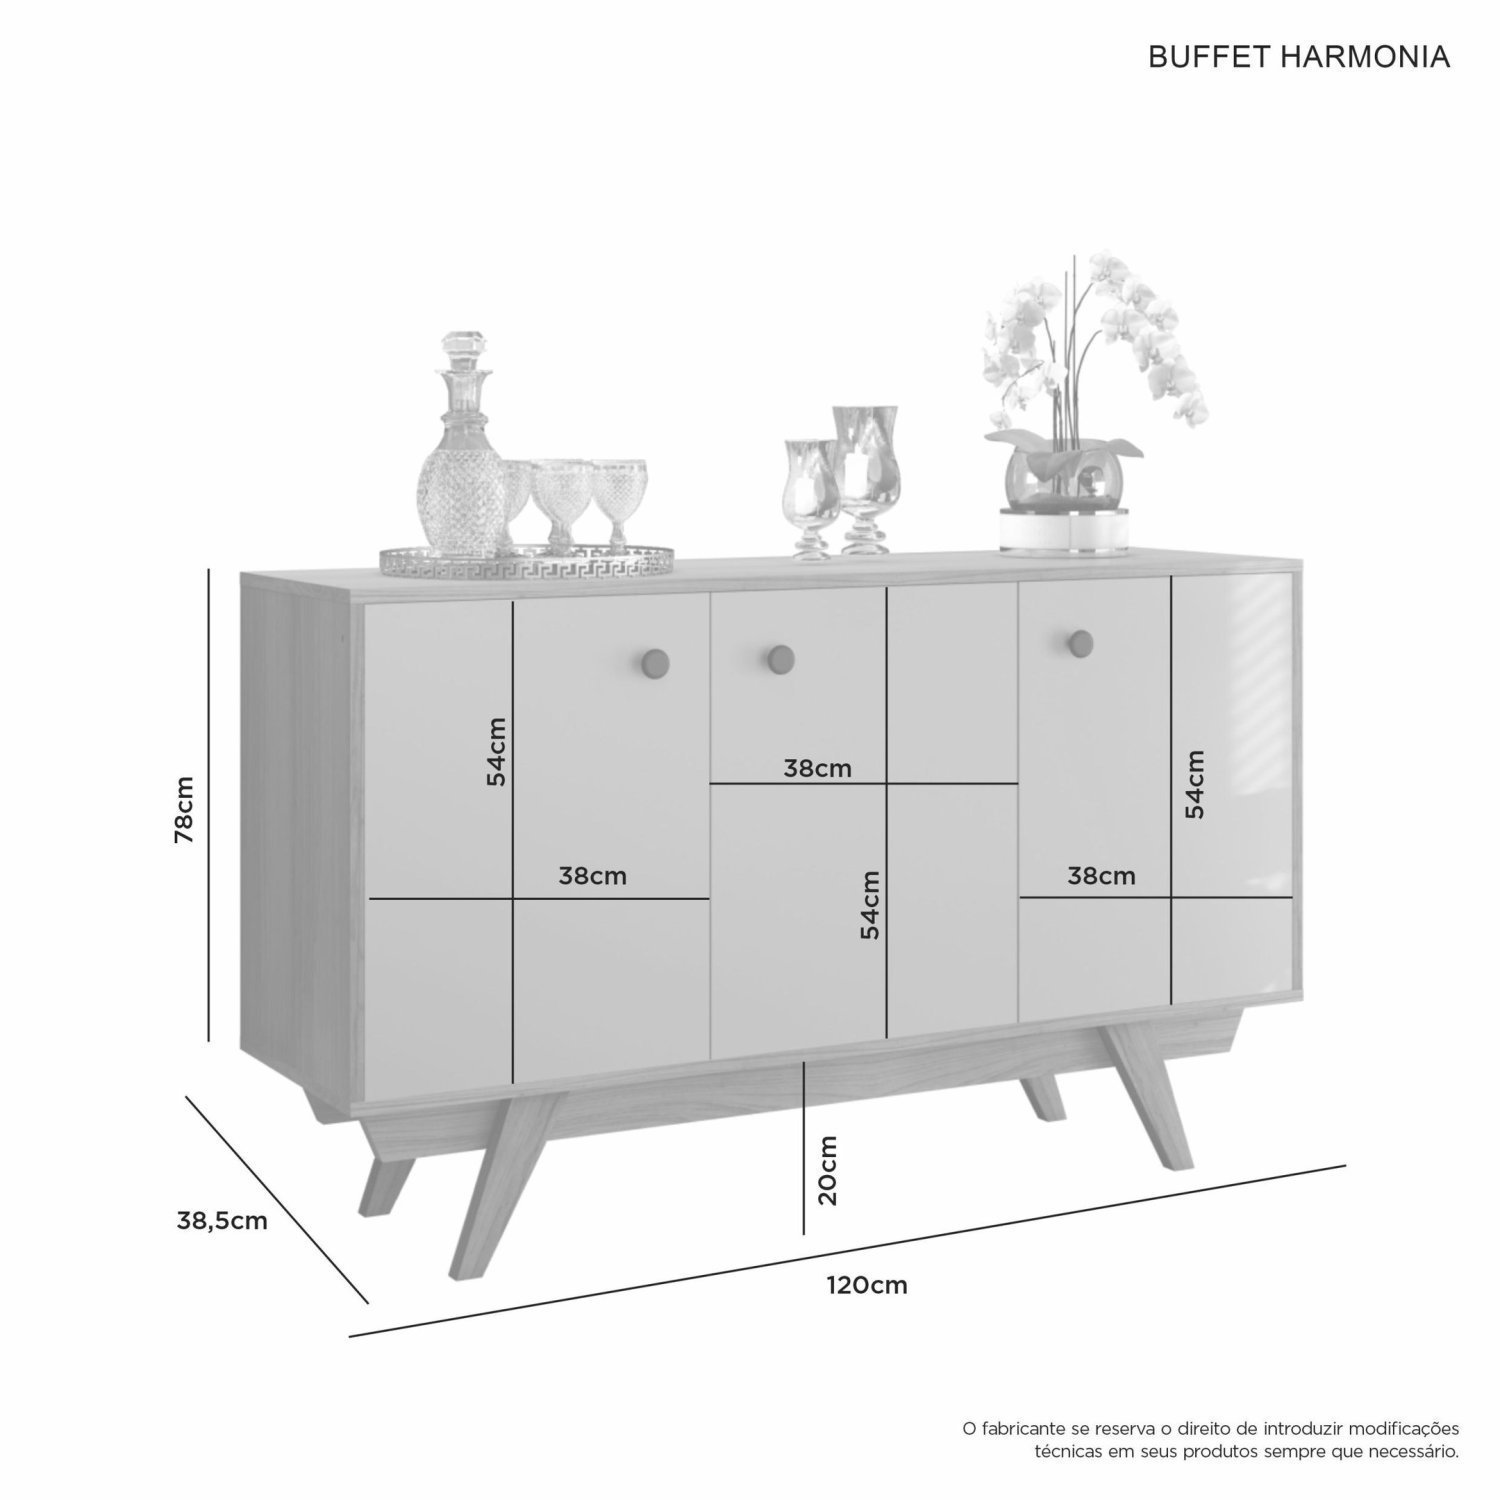 Buffet Aparador 3 Portas Harmonia Candian  - 4